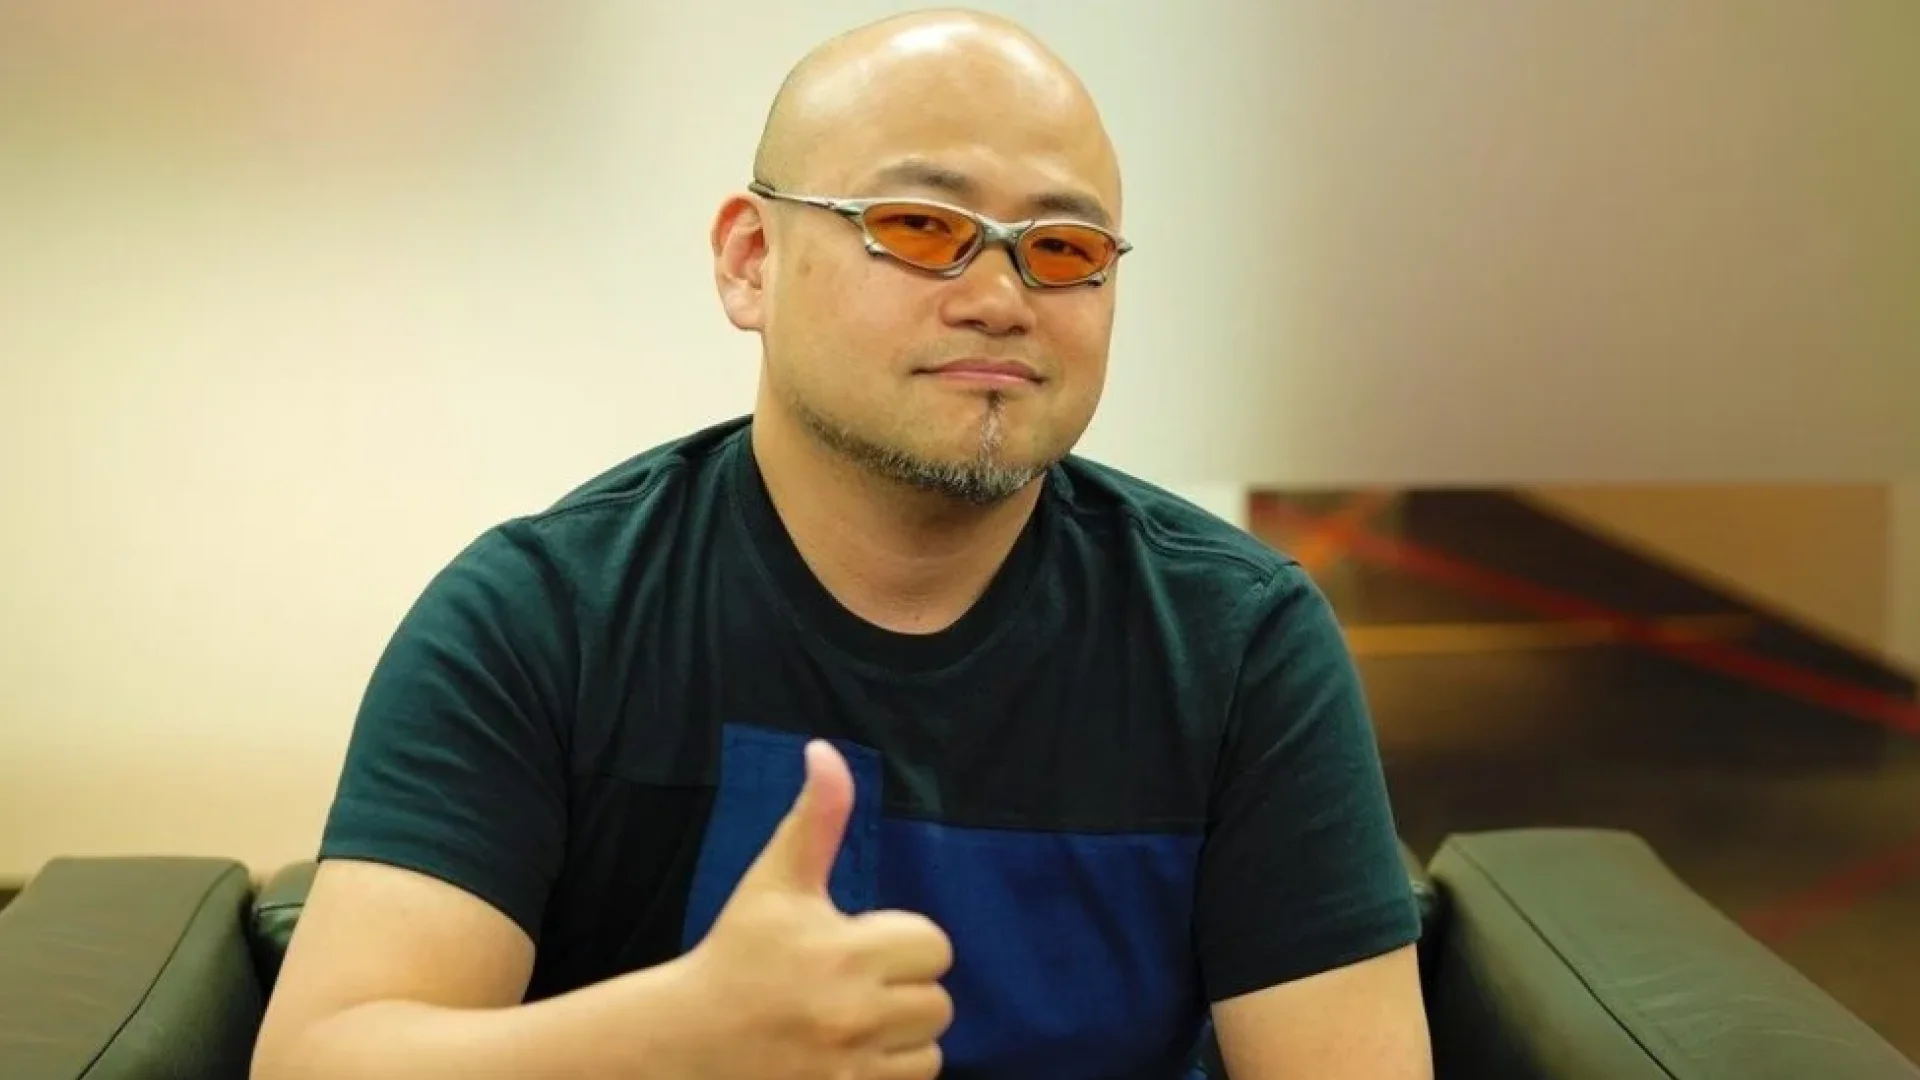 Bayonetta-skaparen Hideki Kamiya har skapat sin egen YouTube-kanal efter att ha lämnat PlatinumGames